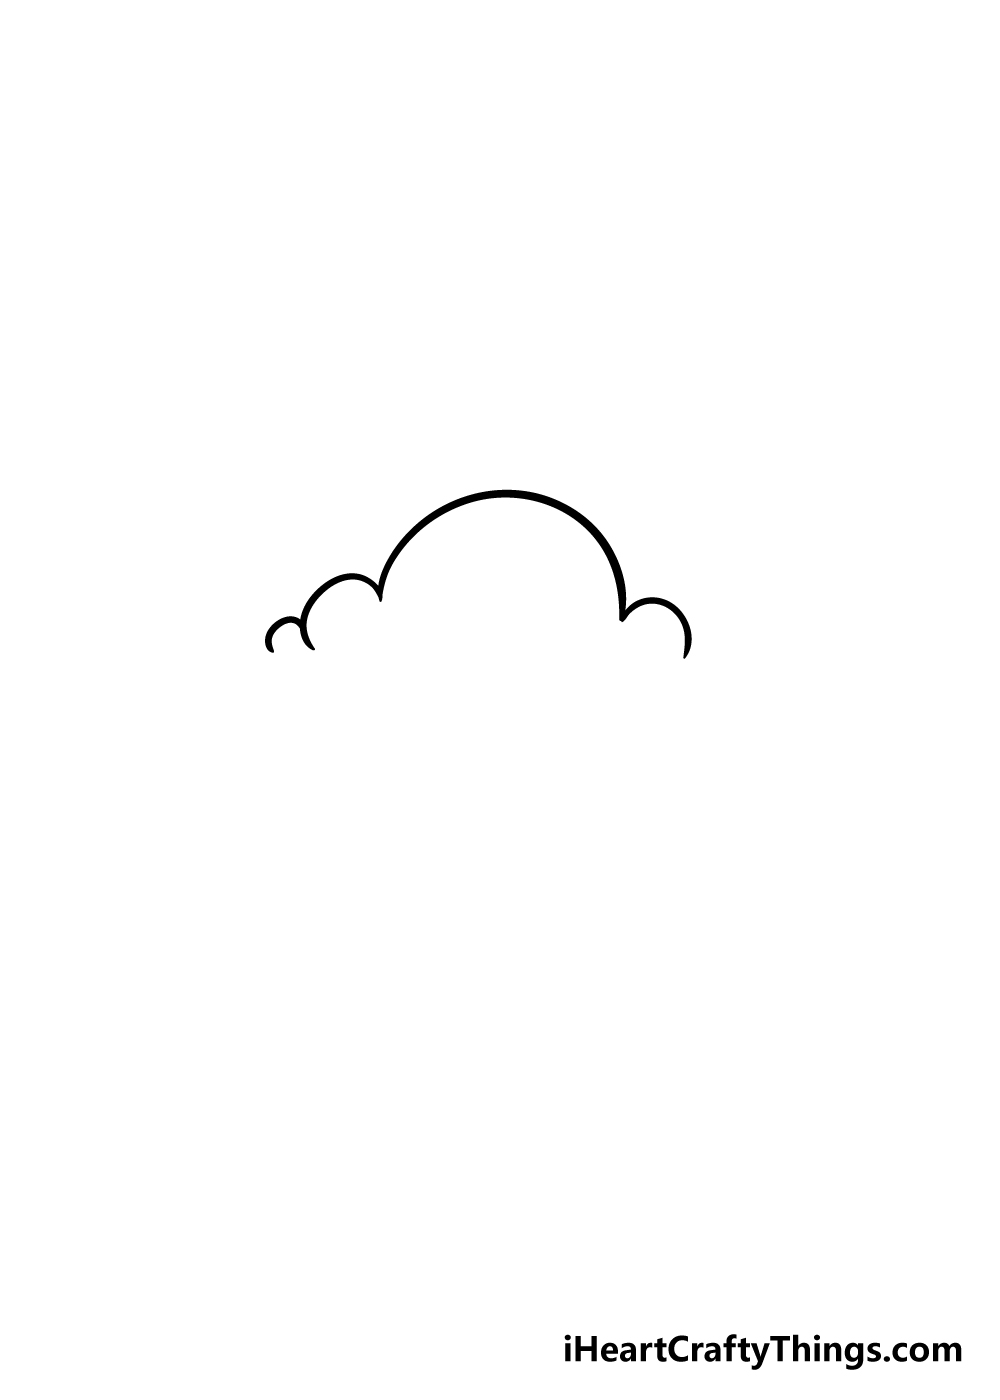 Hình ảnh Cartoon Vẽ Tay Tối Giản Vật Liệu đám Mây đơn Giản PNG Miễn Phí Tải  Về  Lovepik